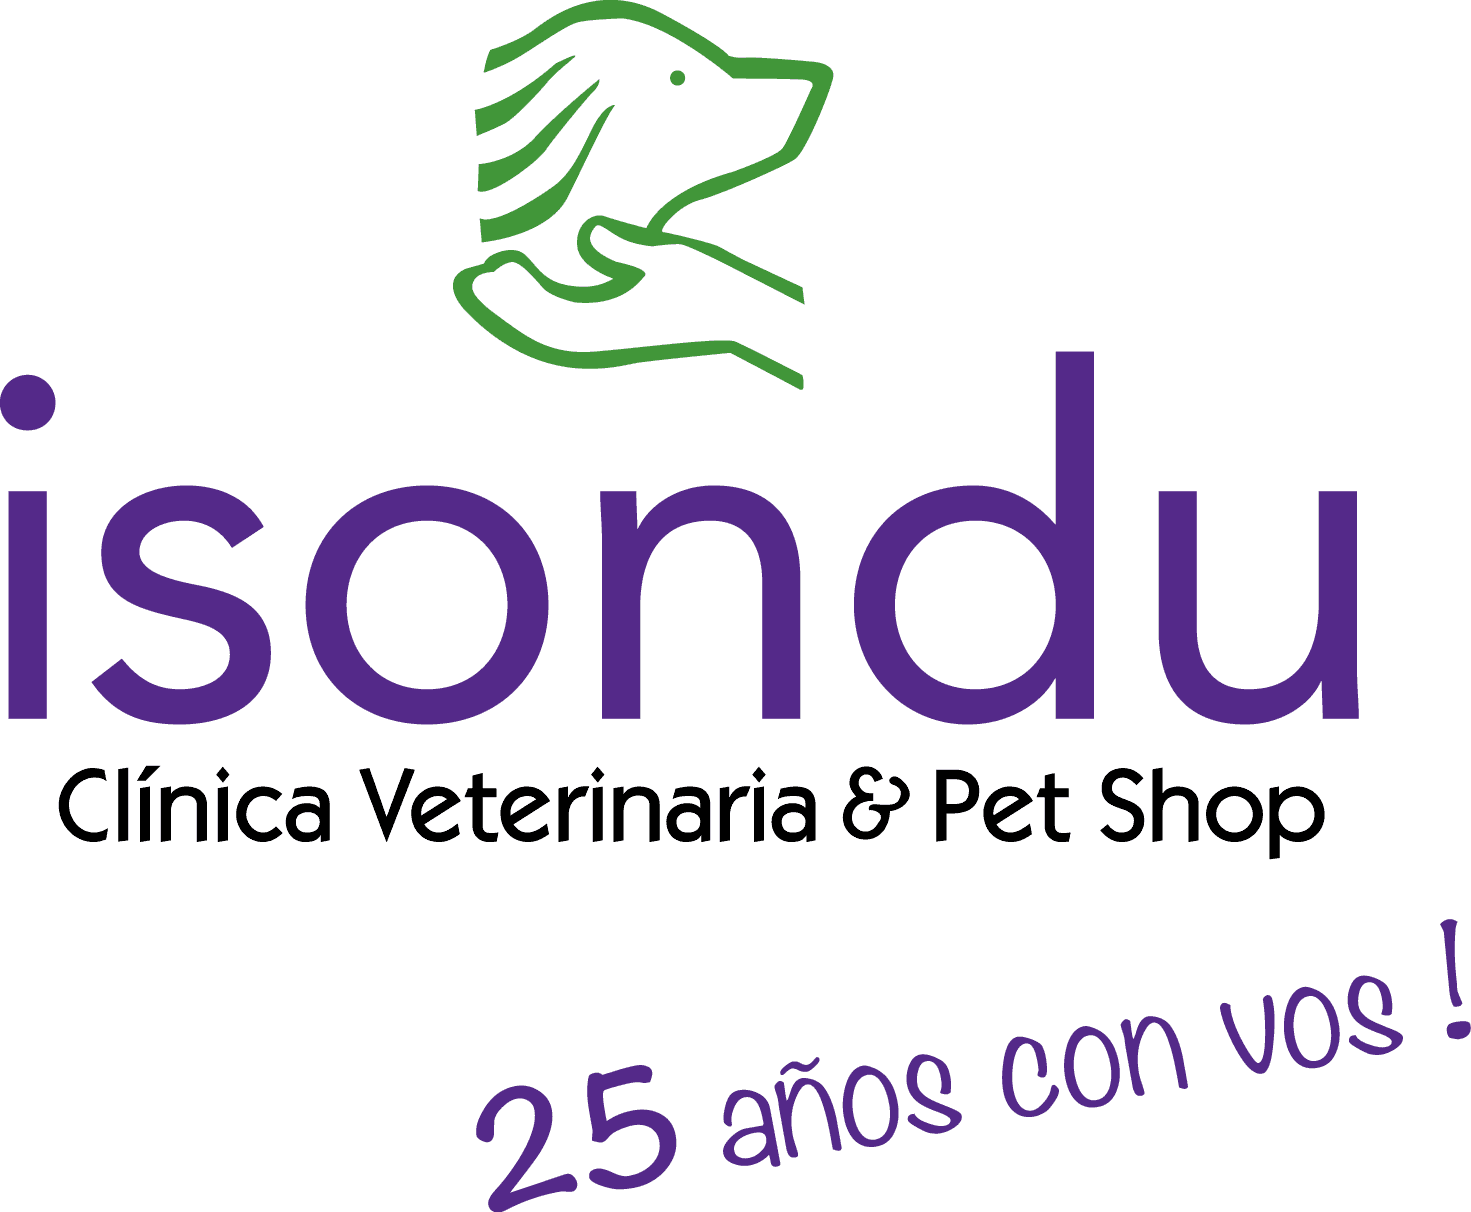 El cuidado de las mascotas y la pandemia by Isondú